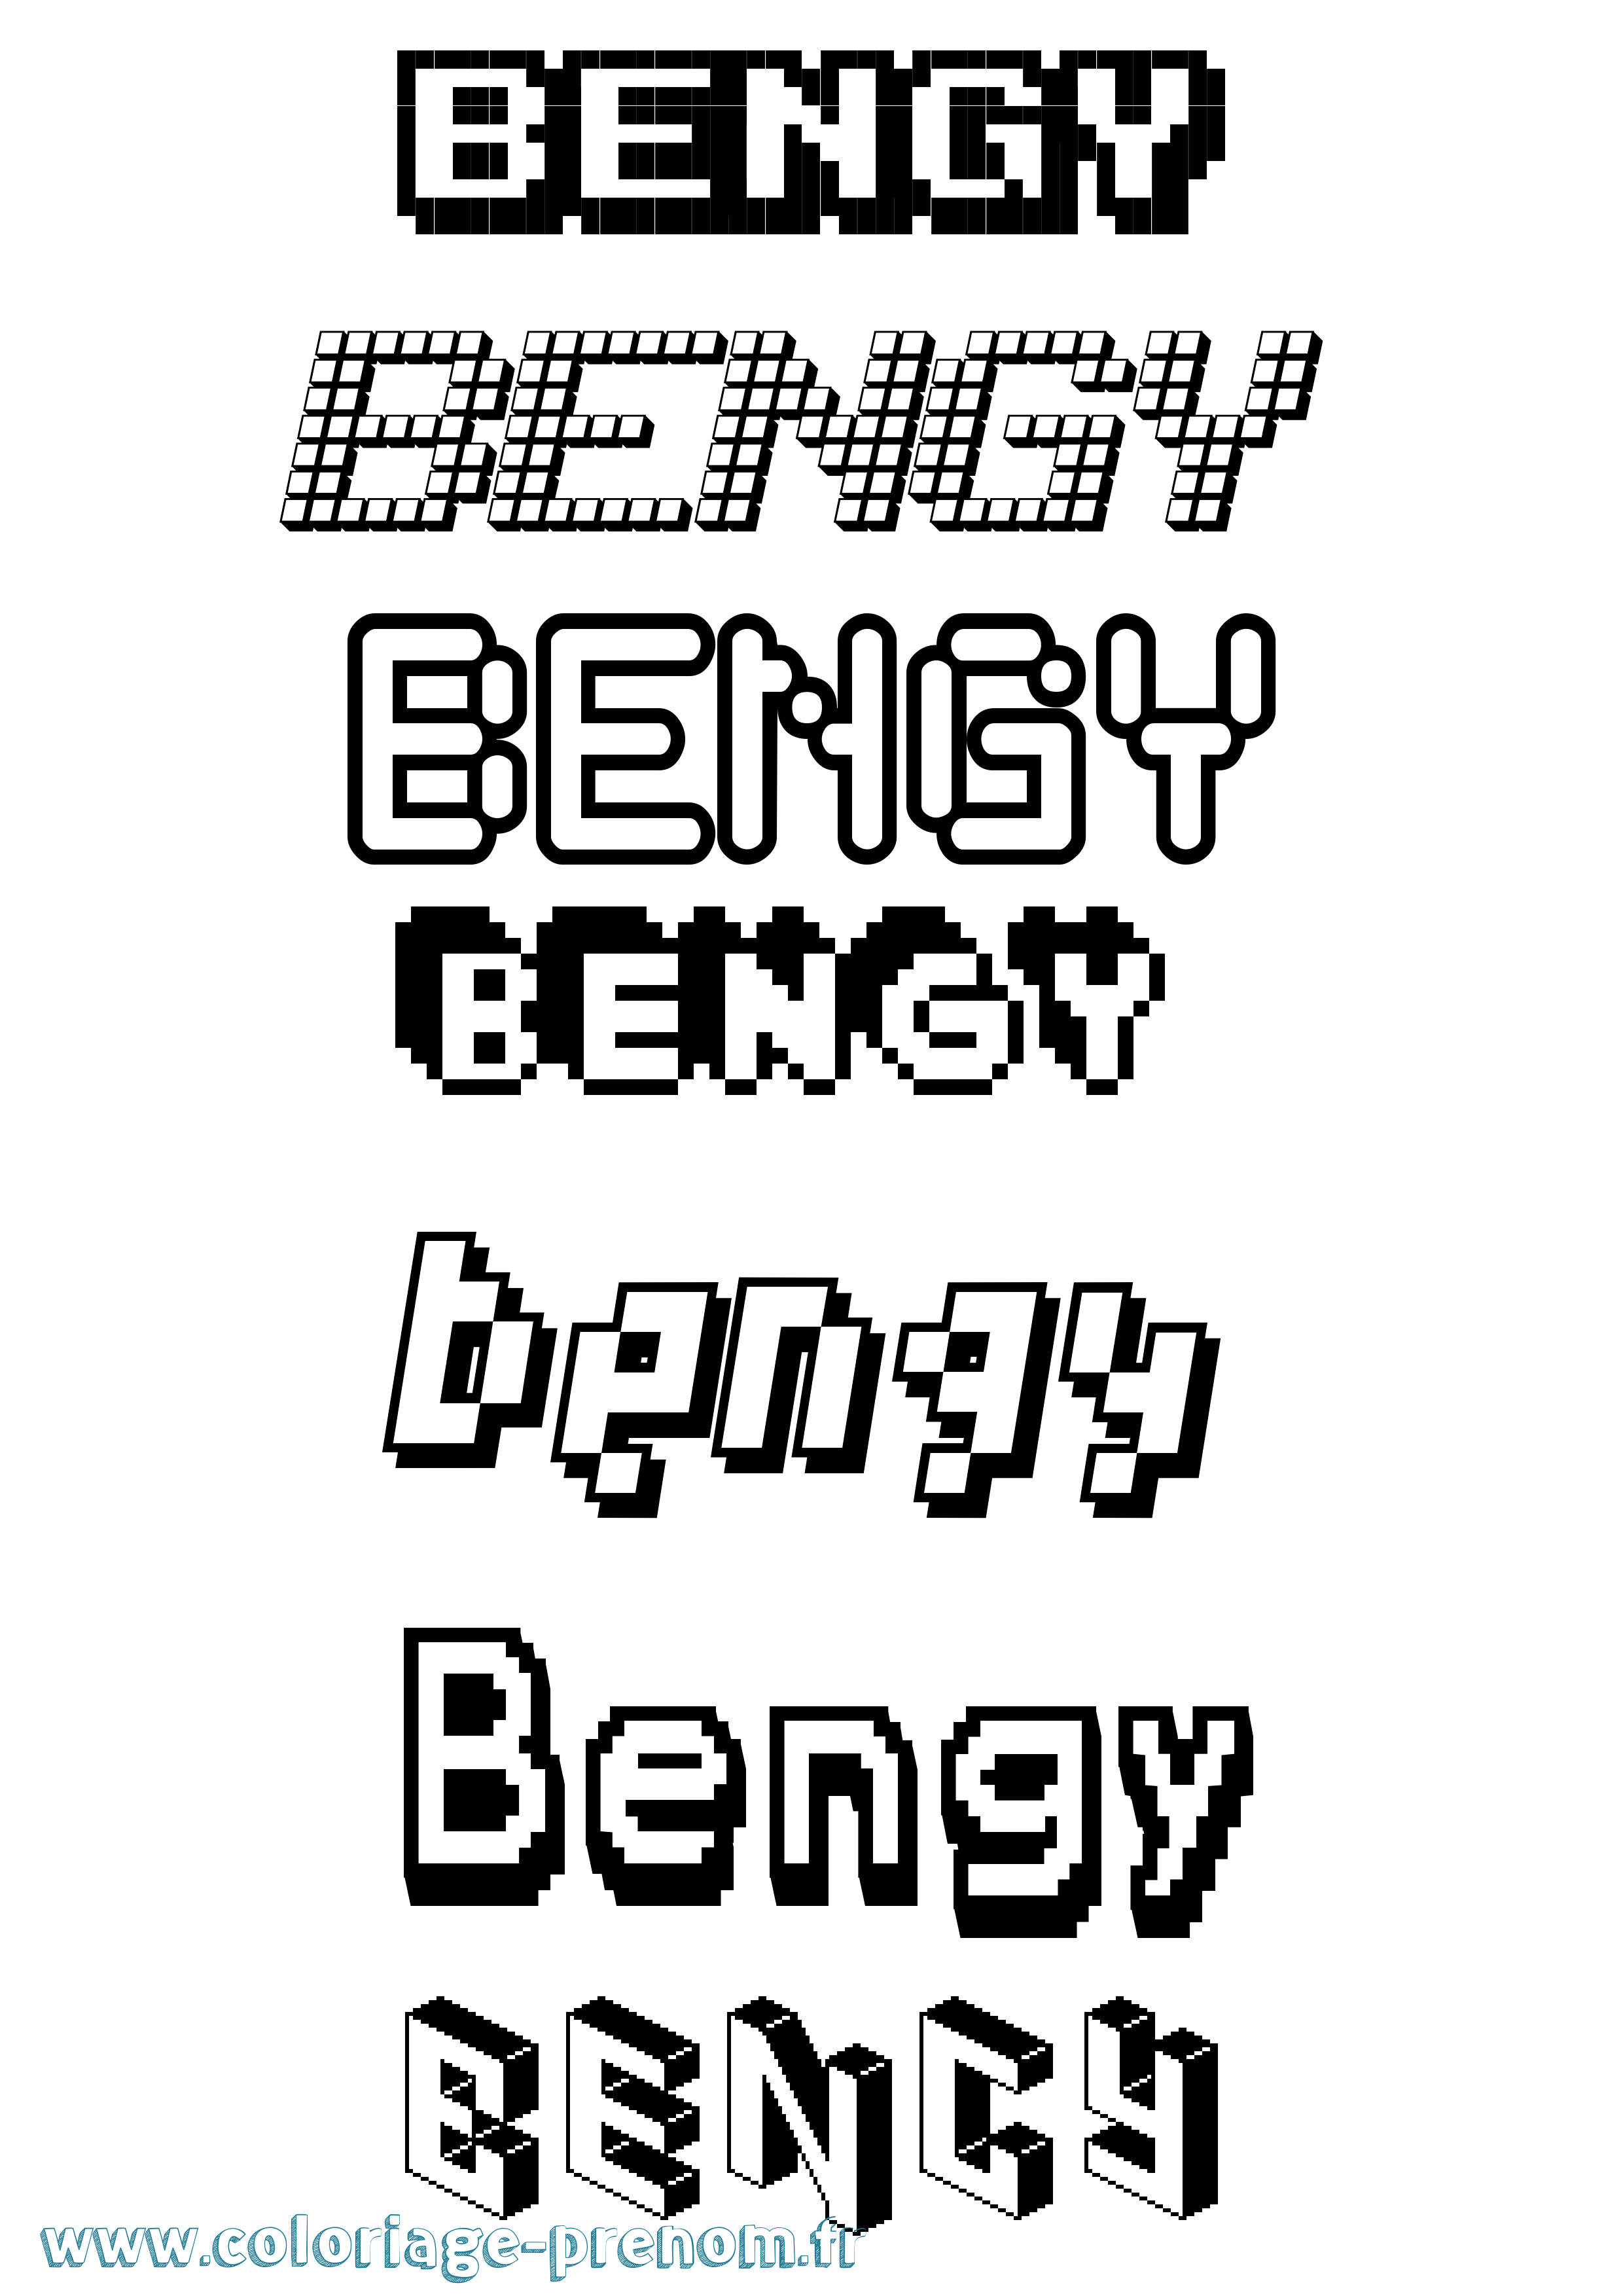 Coloriage prénom Bengy Pixel